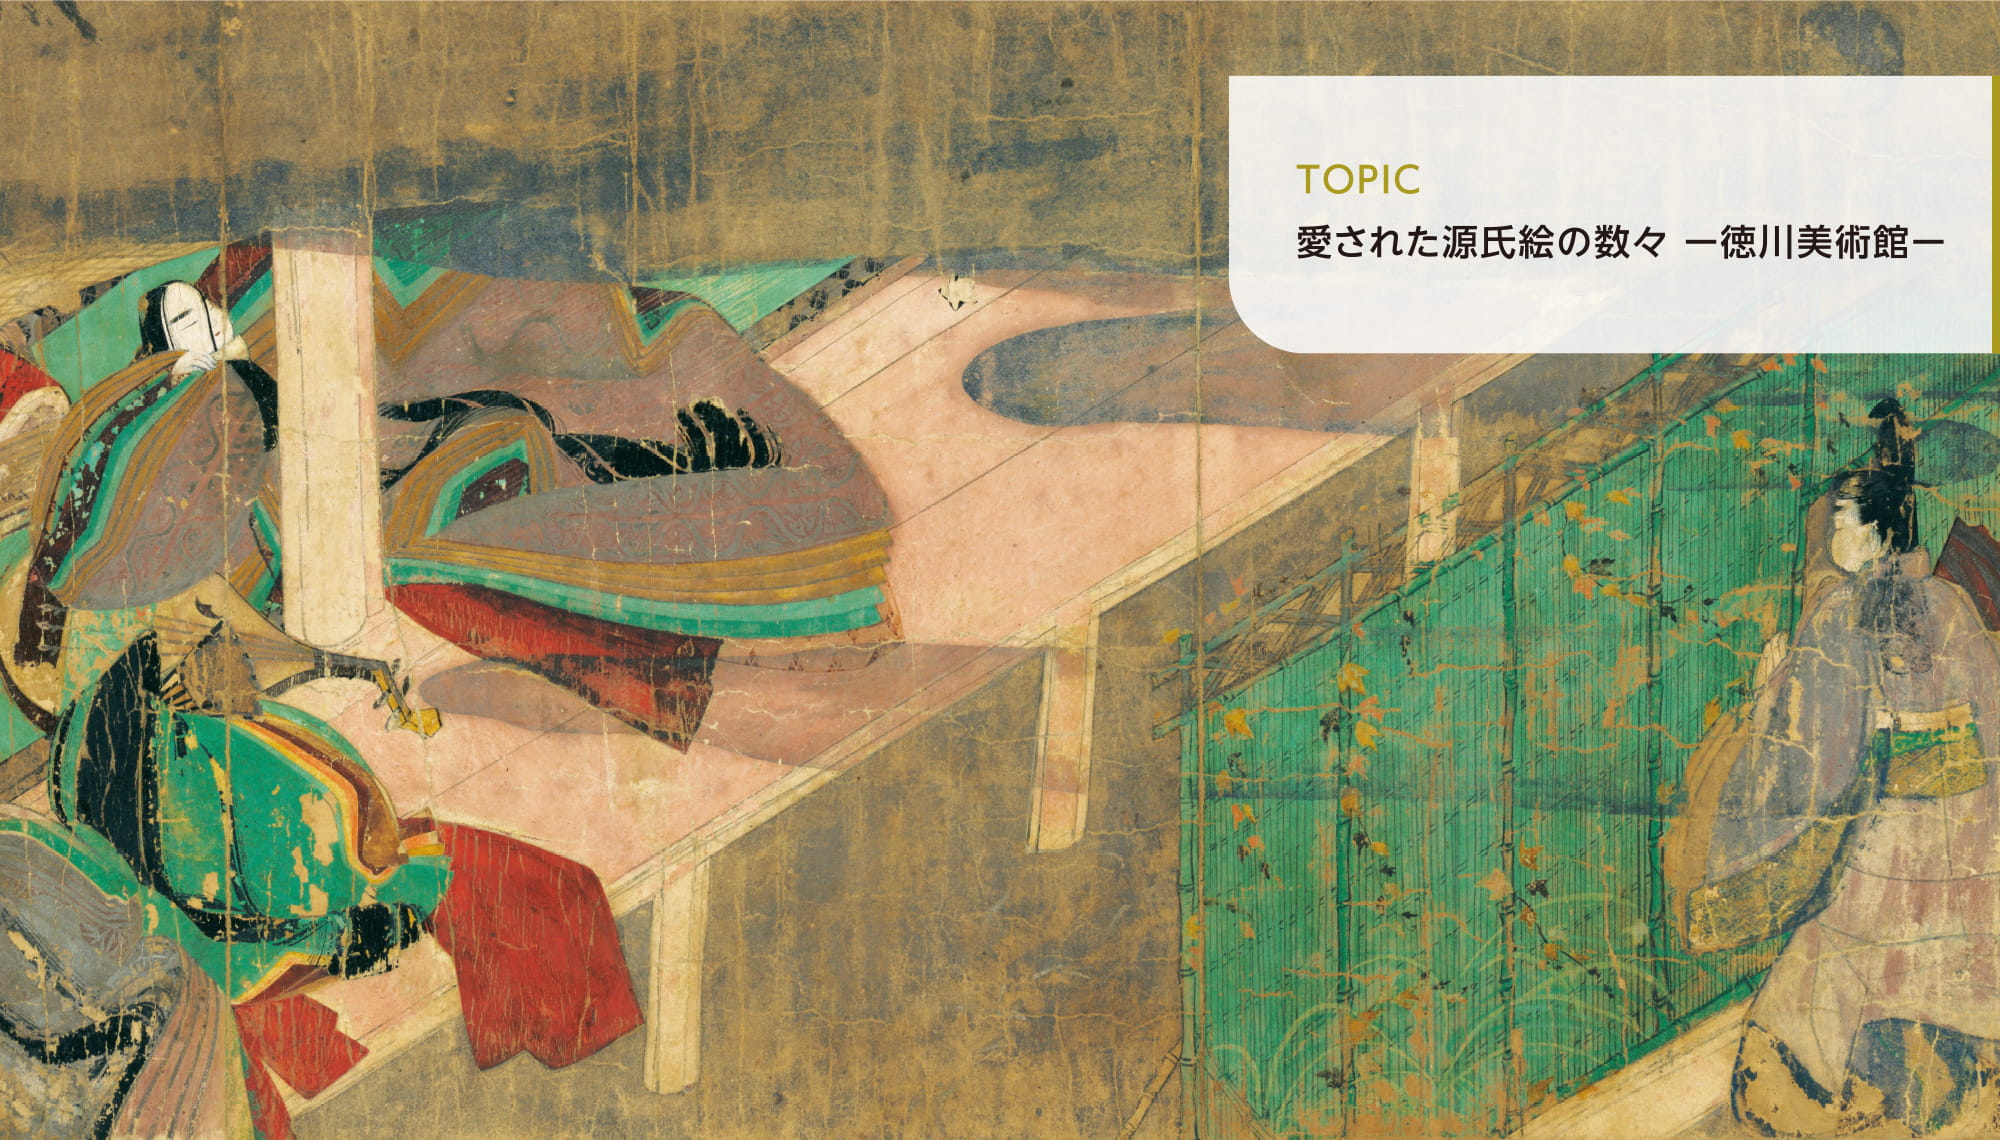 大丸・松坂屋 秋のビューティアップ この秋は「十人十色の美衣食住」をテーマに、自分を満たす美の秘訣を著名人にインタビュー